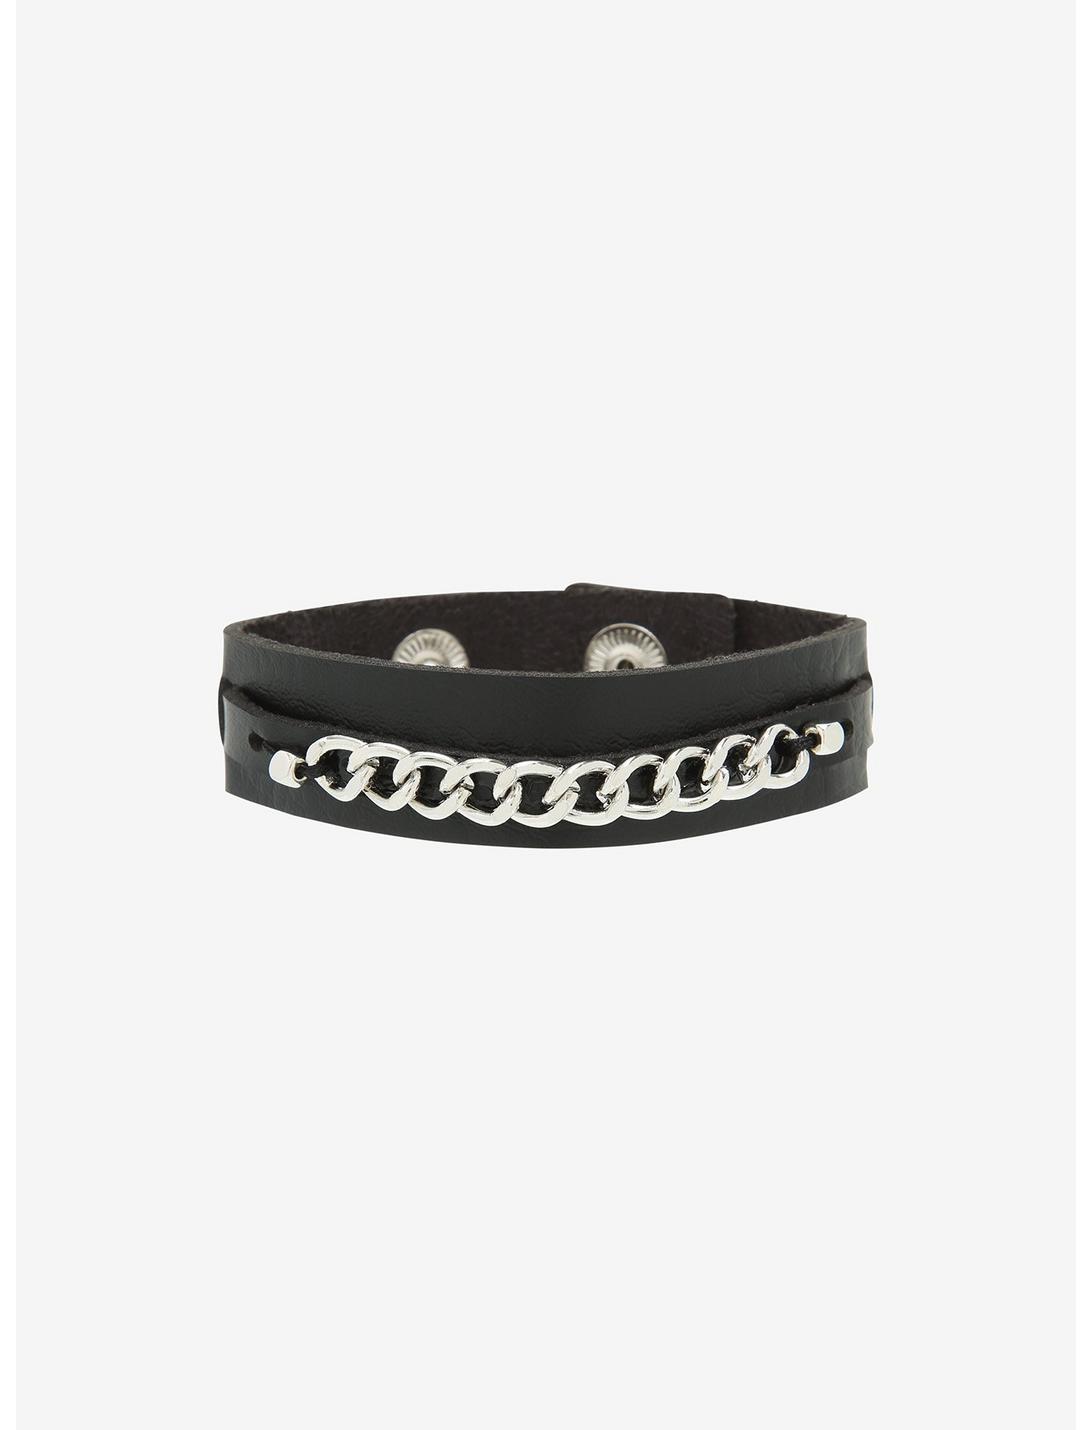 Black Faux Leather Cuff Bracelet, , hi-res